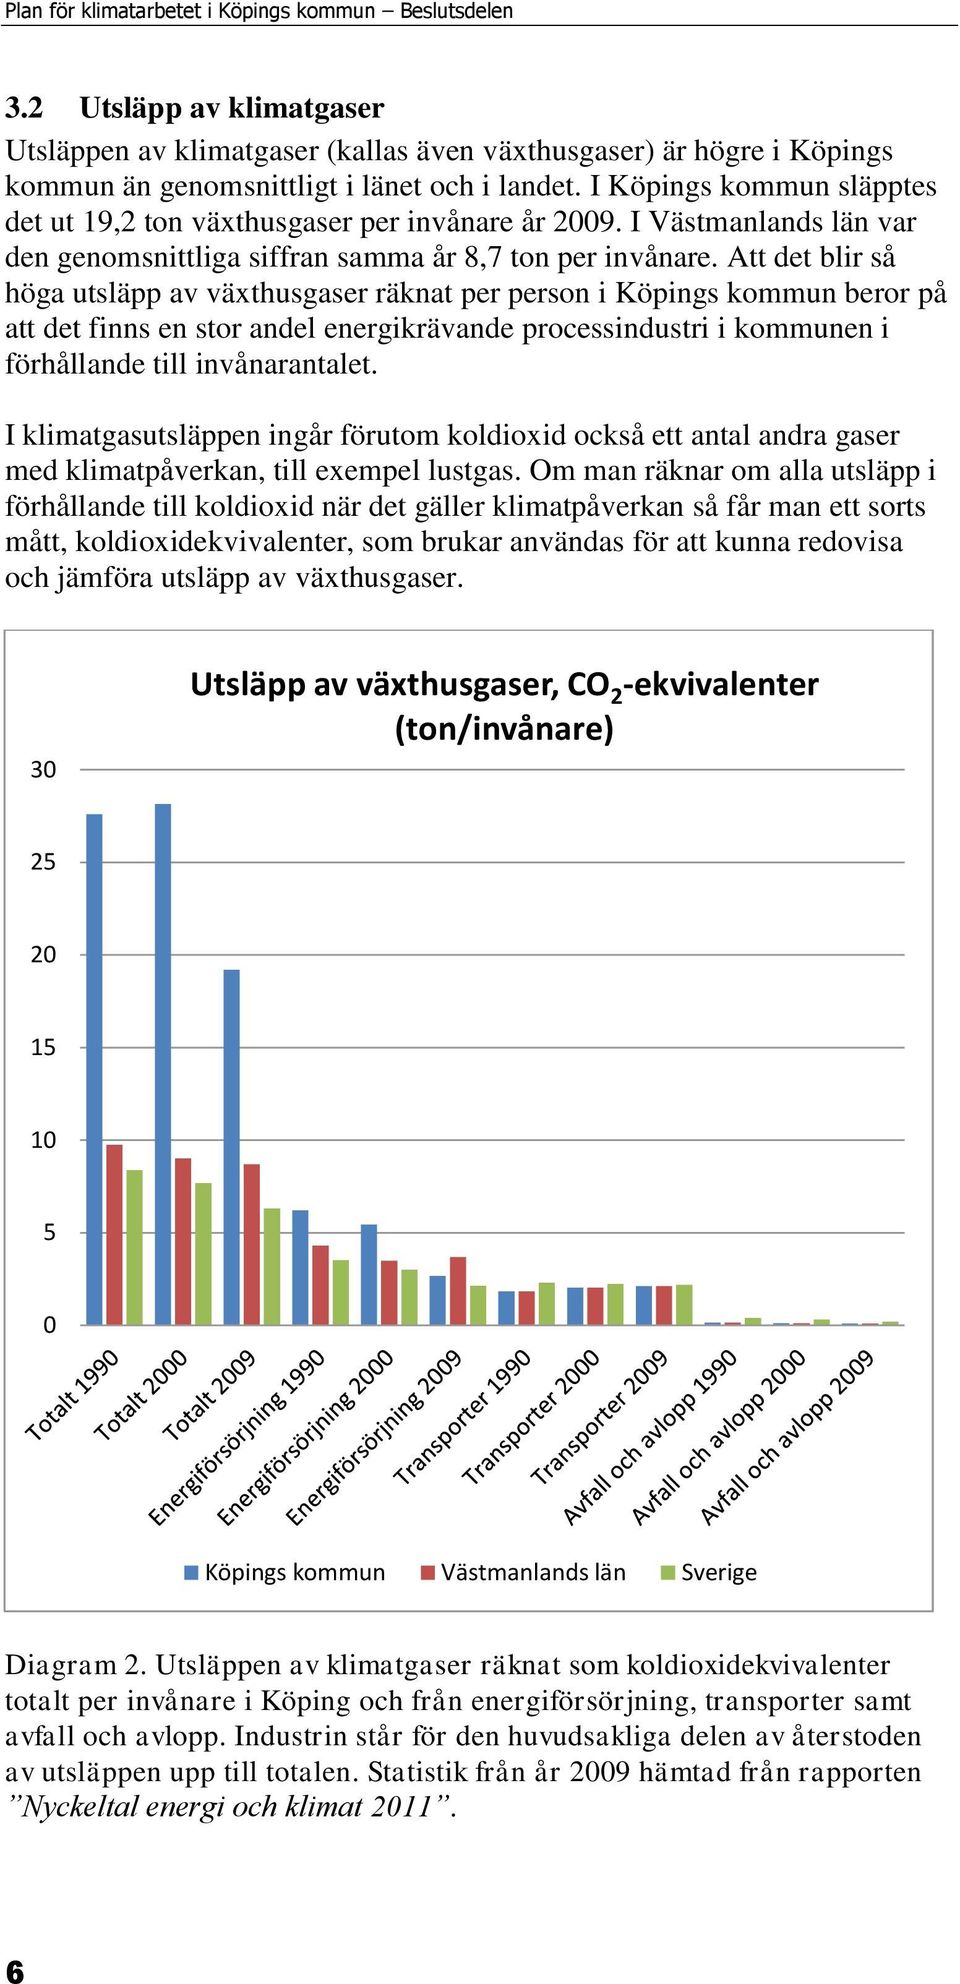 Att det blir så höga utsläpp av växthusgaser räknat per person i Köpings kommun beror på att det finns en stor andel energikrävande processindustri i kommunen i förhållande till invånarantalet.